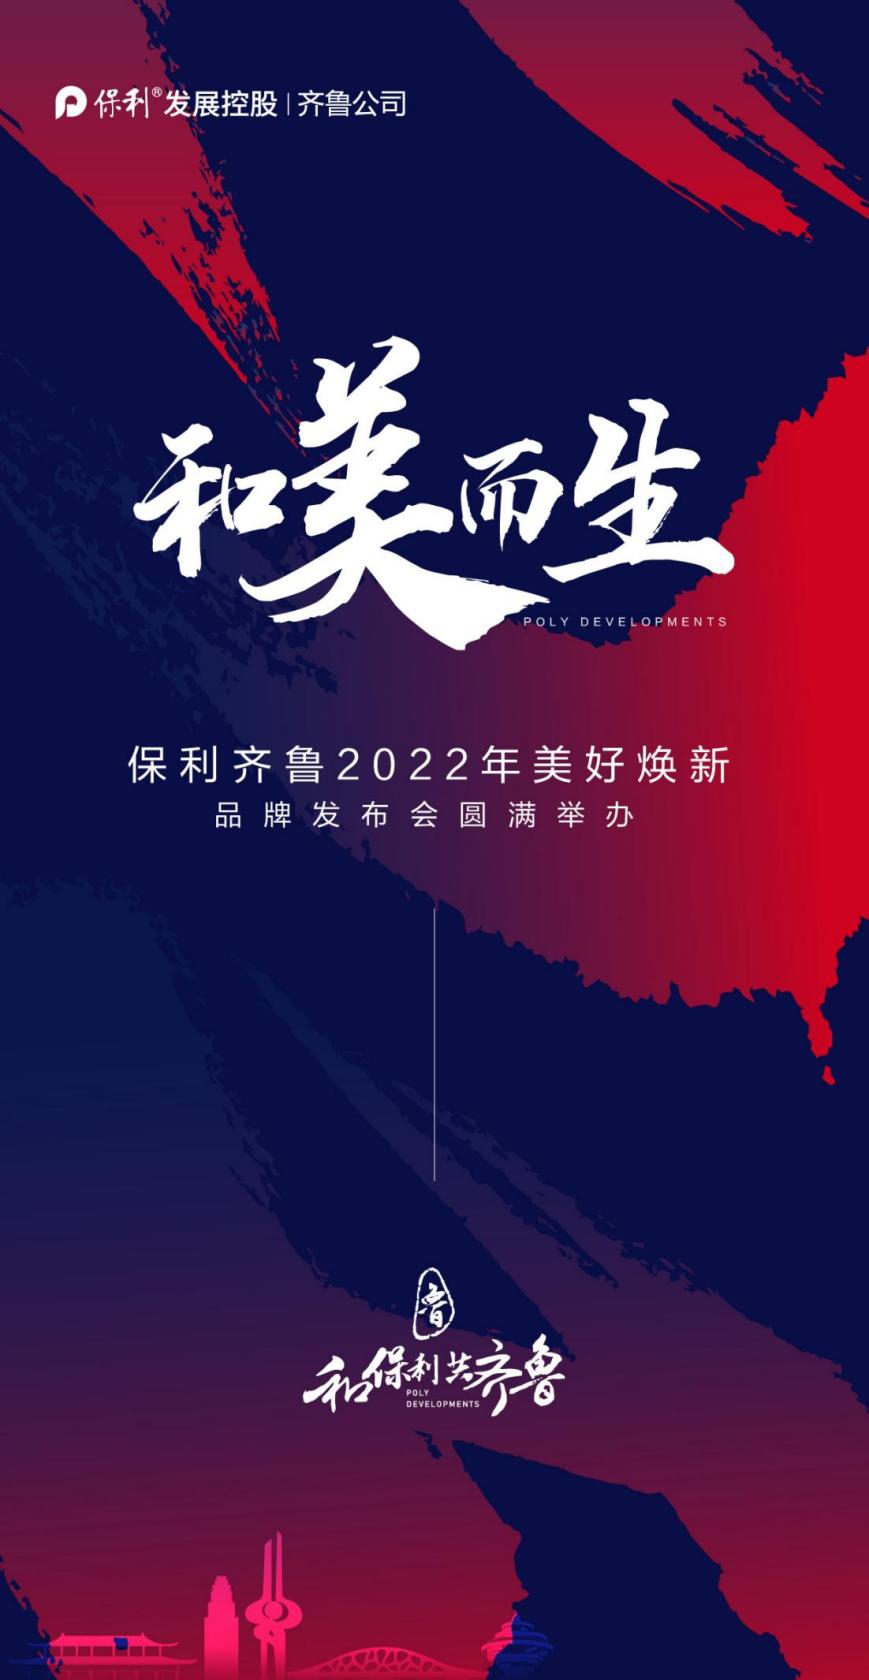 鞏固頭部房企地位 保利發展齊魯公司舉辦2022年品牌發佈會_中國網地産